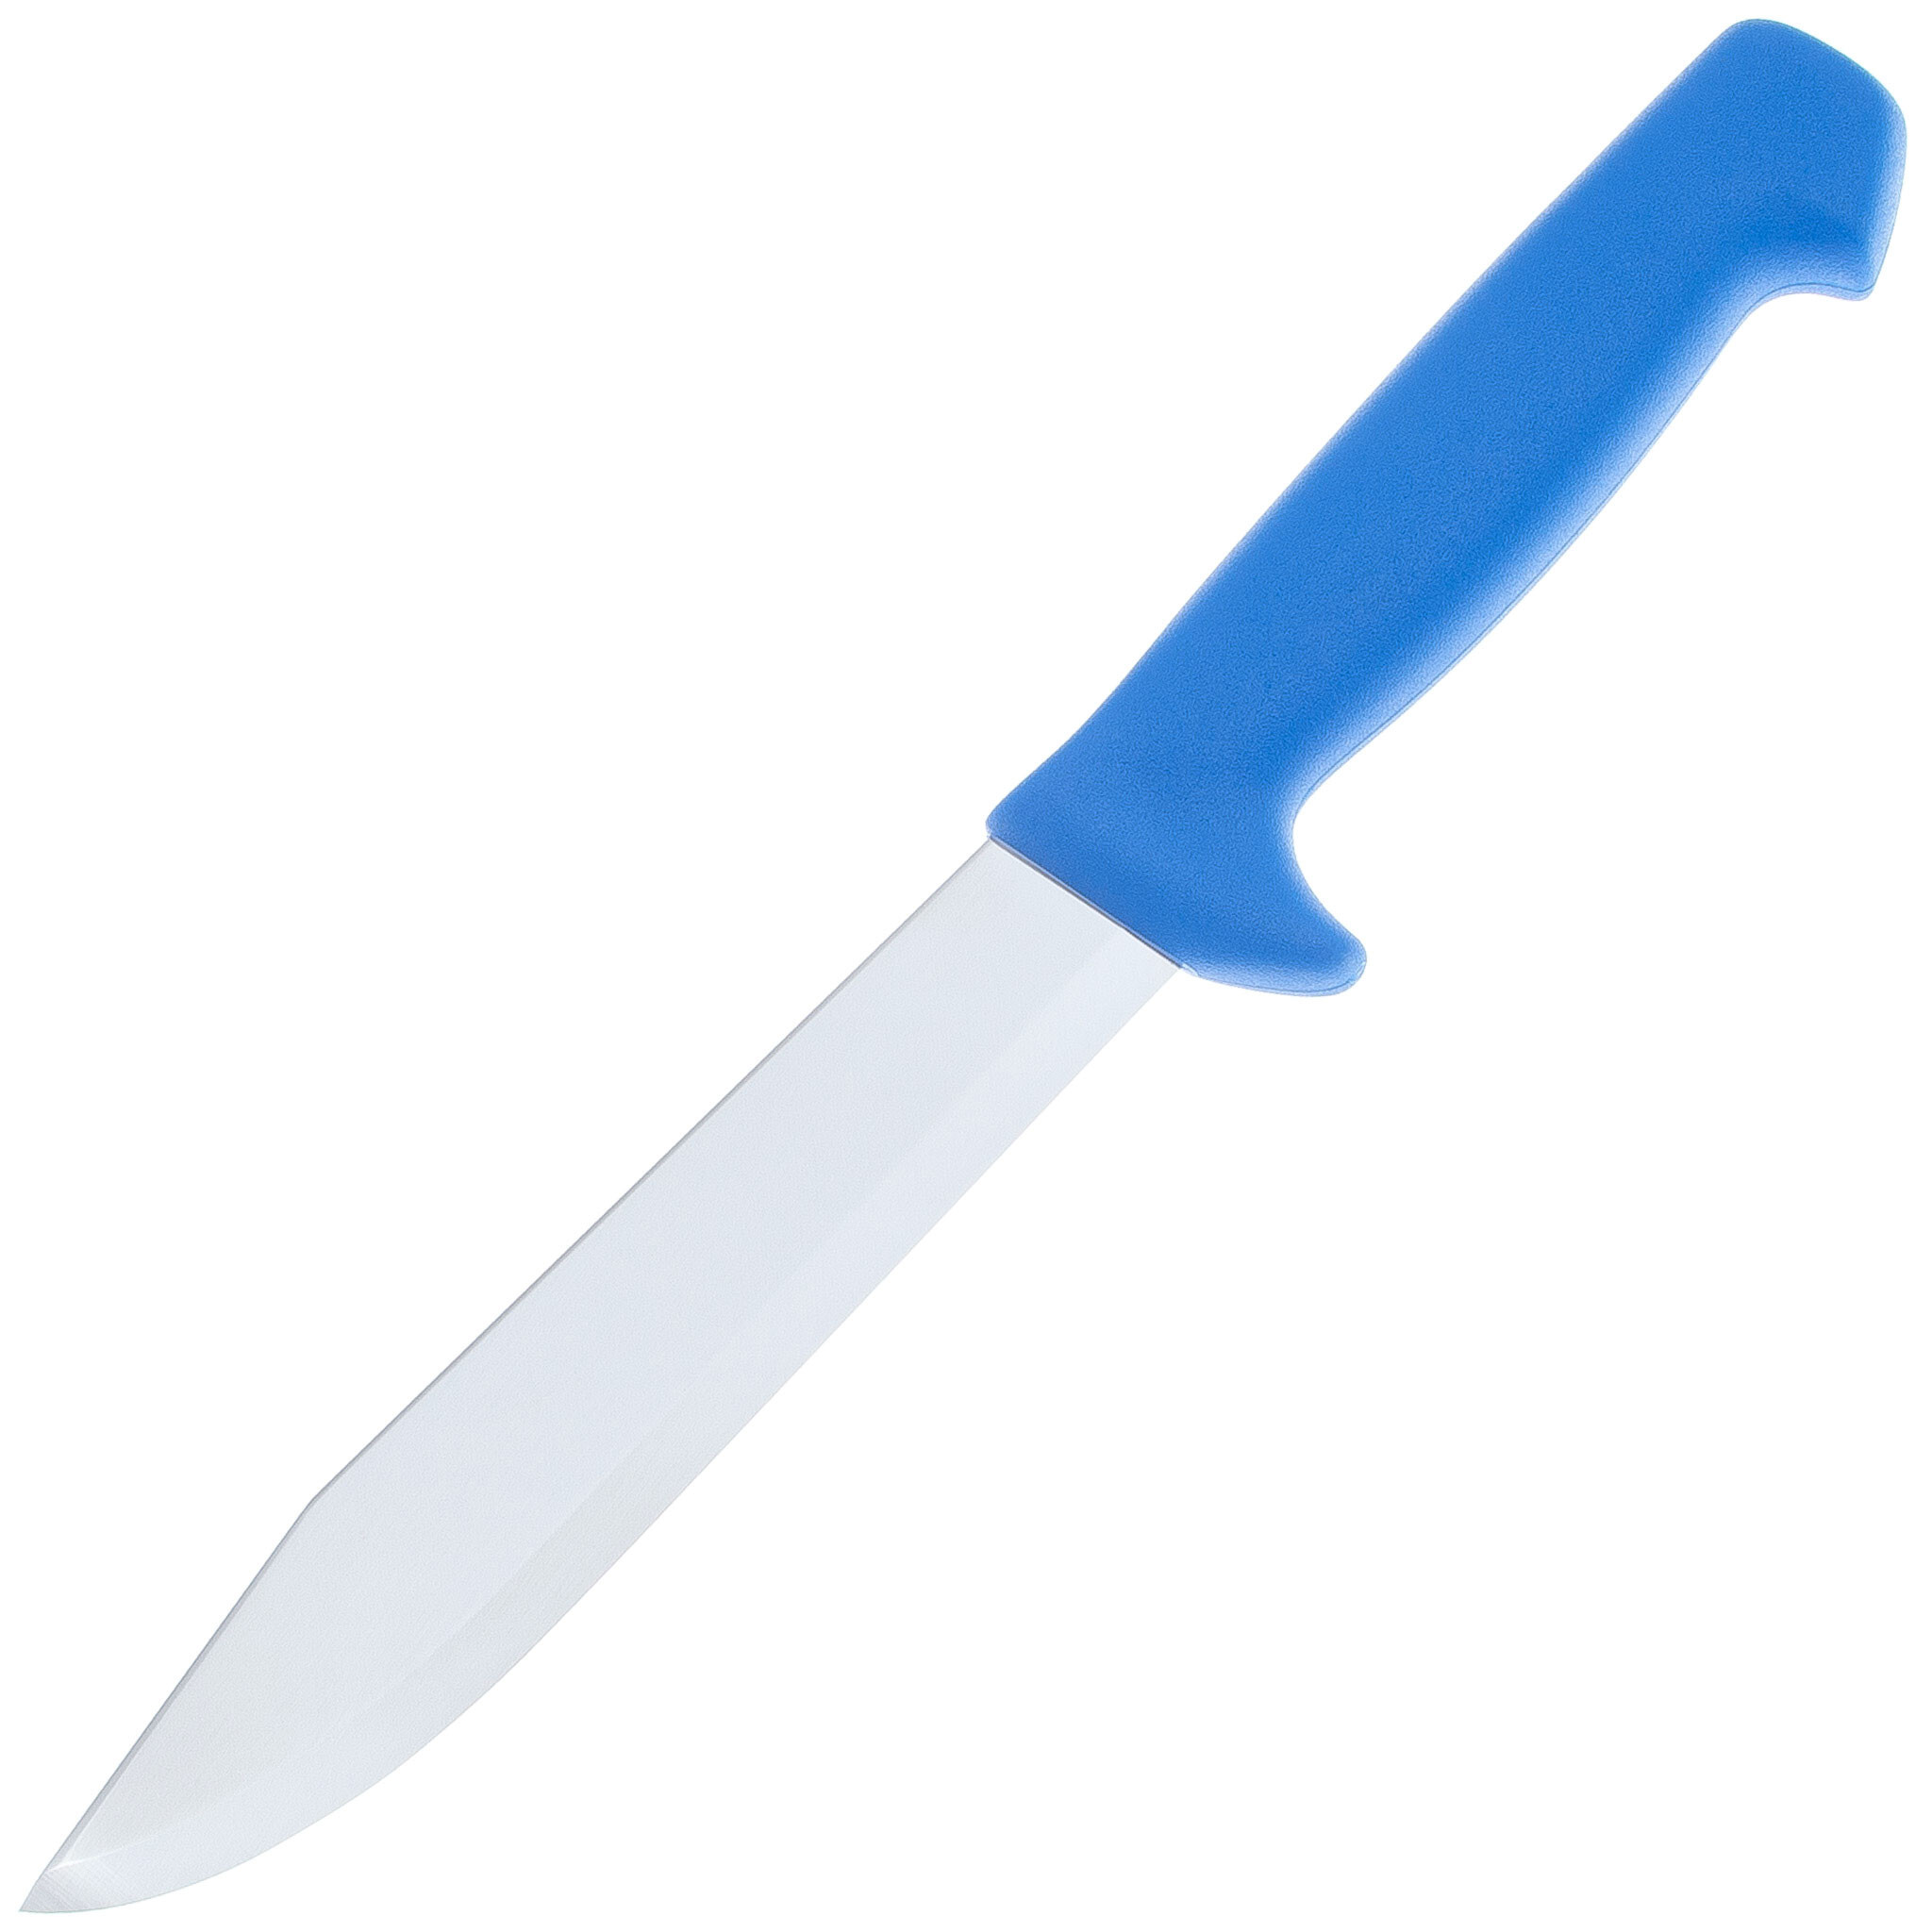 Нож для рыбы Morakniv Fishing Knife 169 мм, сталь Sandvik 12C27, рукоять пластик, blue